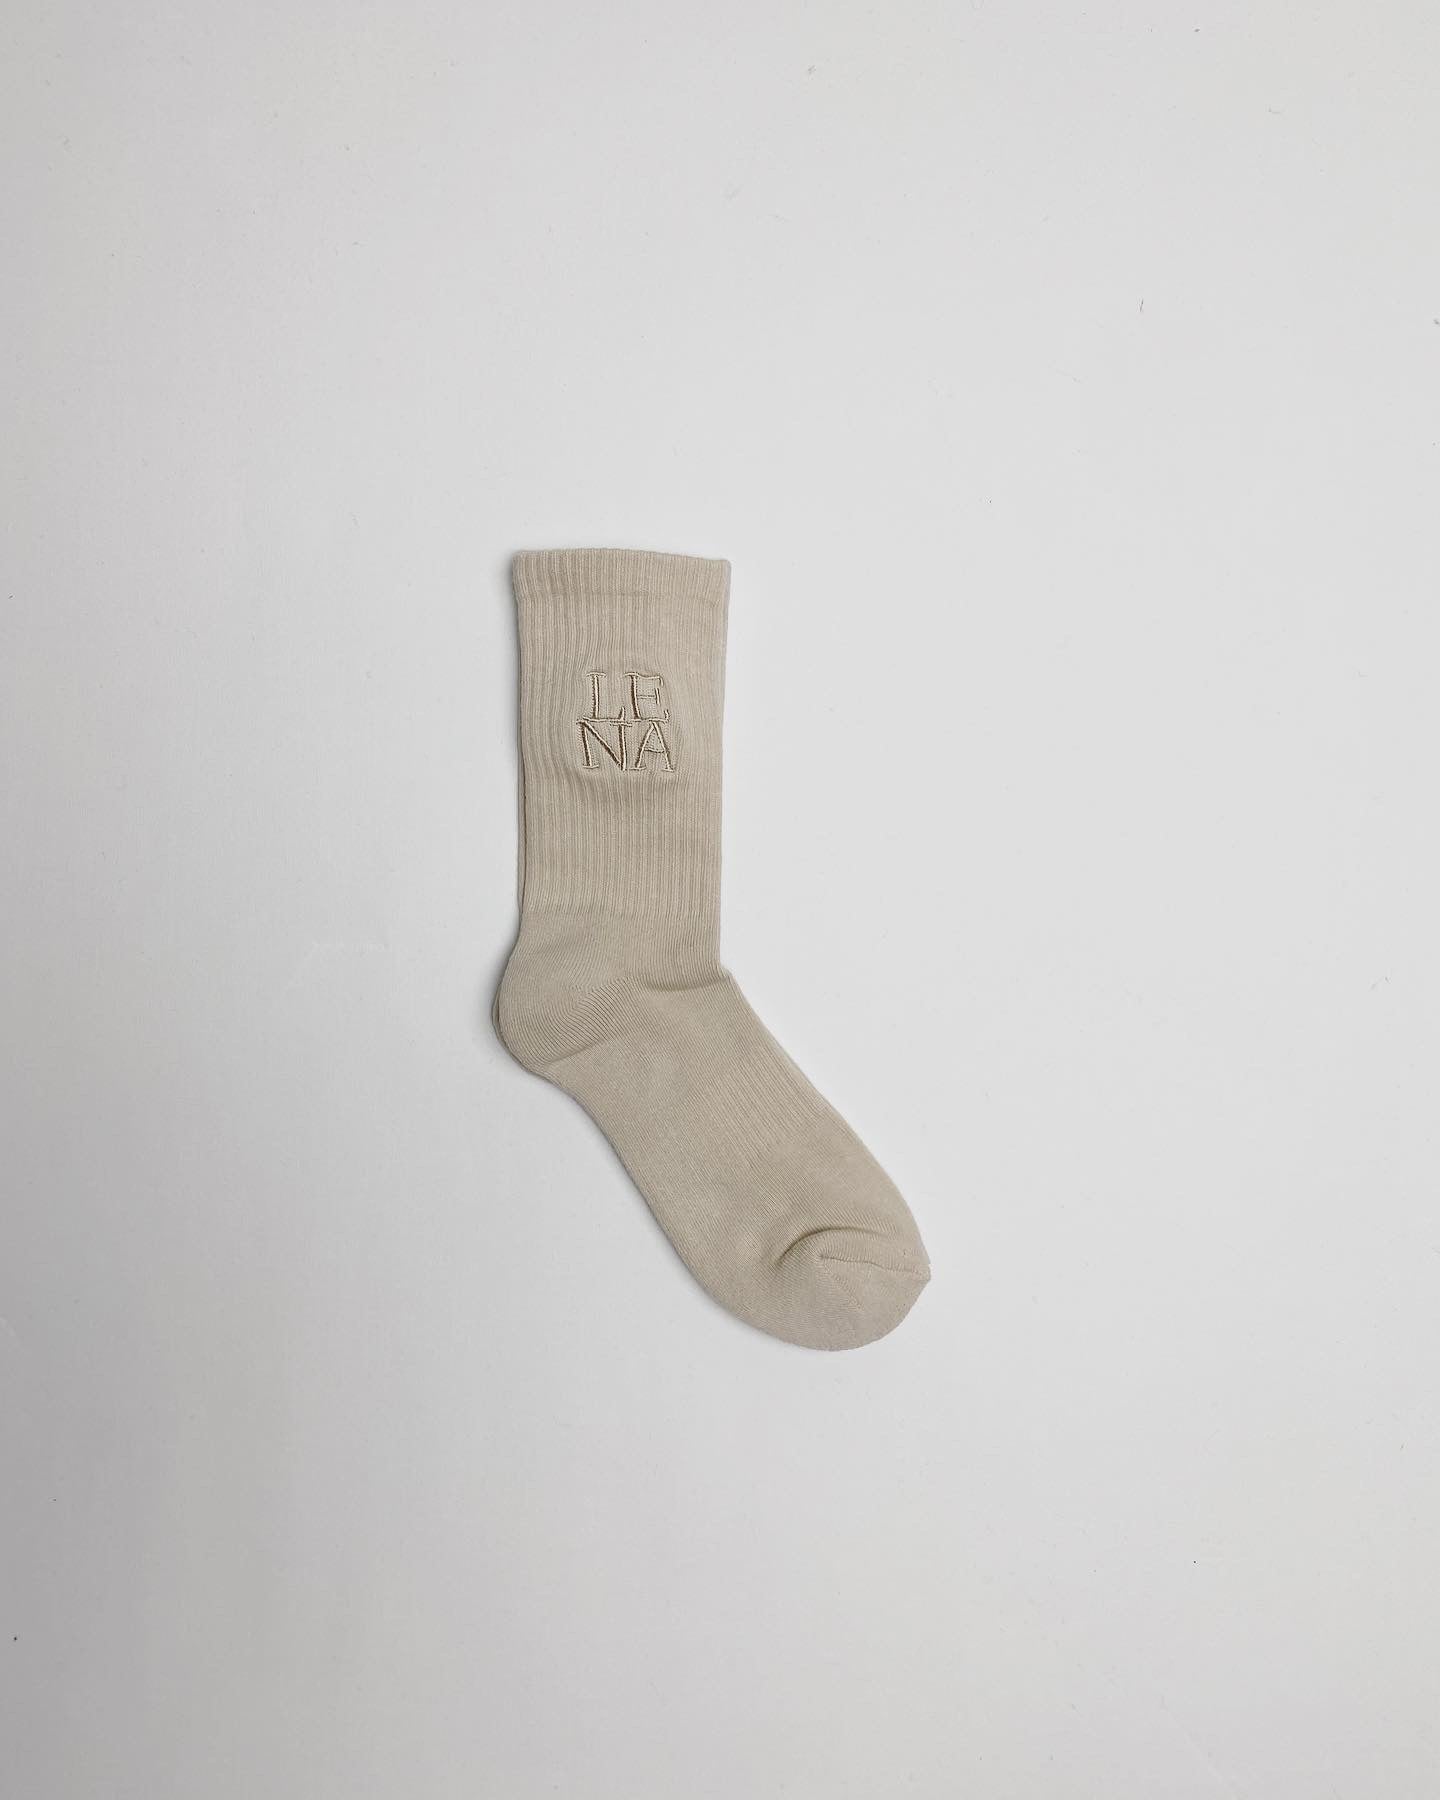 Lena - '2021' Socken